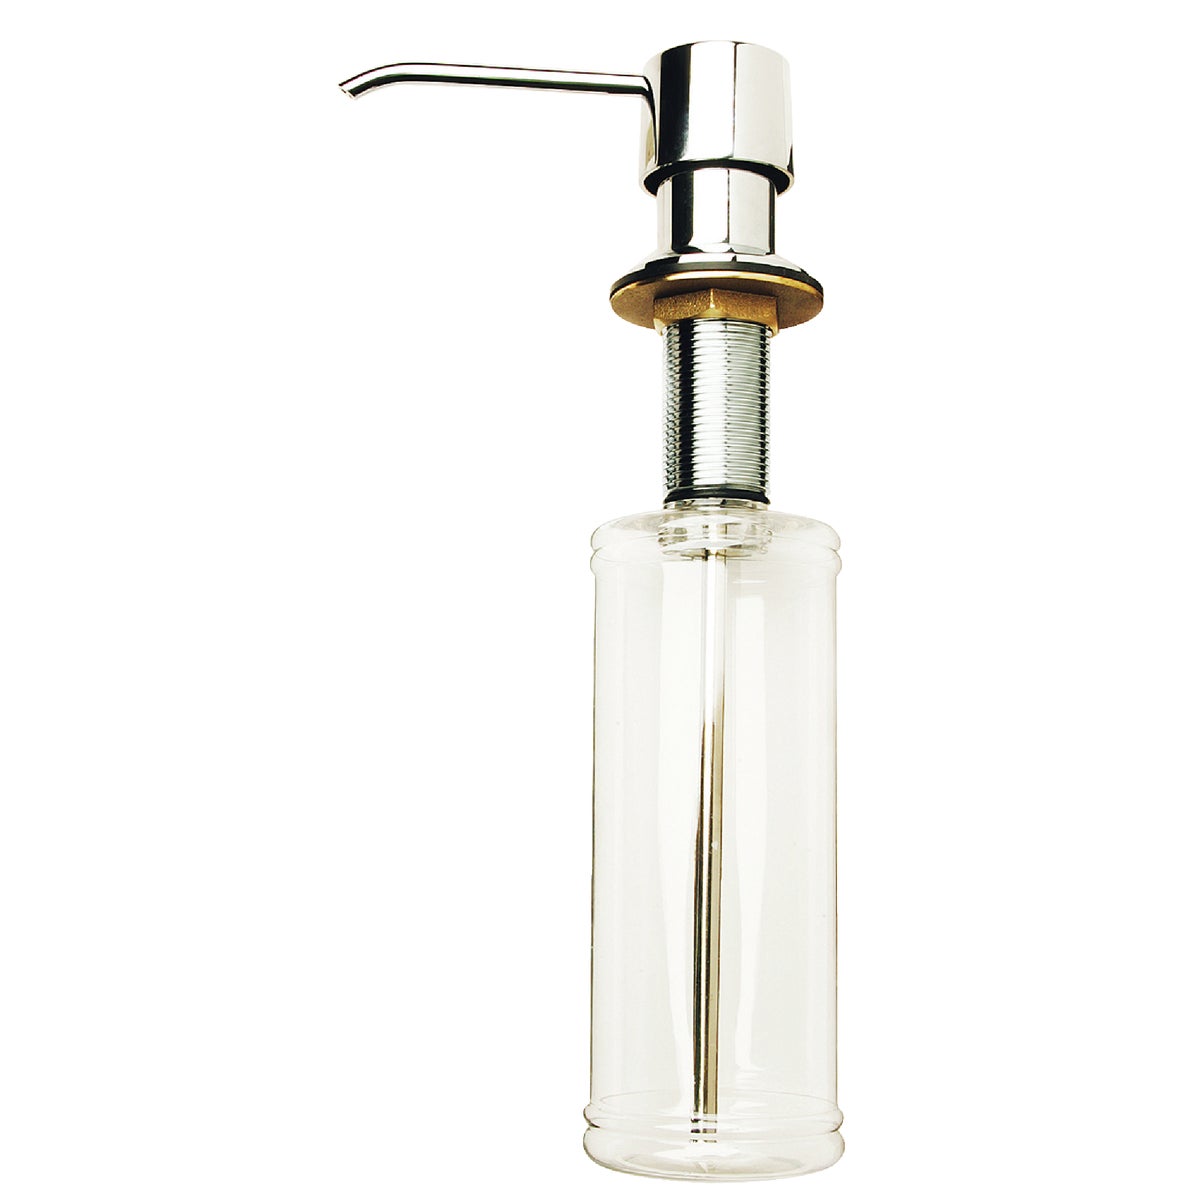 Item 438486, Premium soap lotion dispenser.